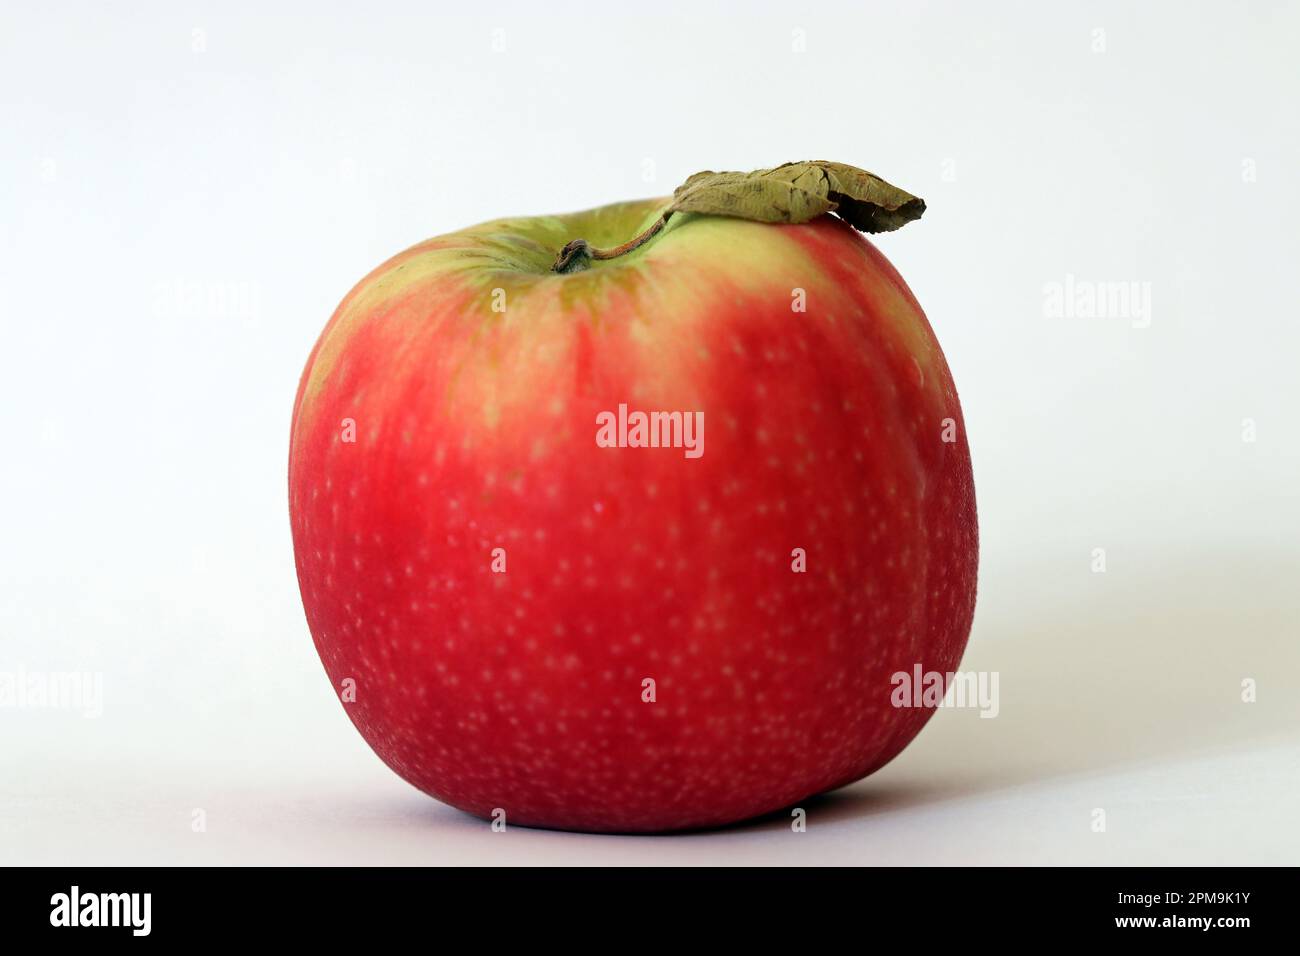 Ein klassischer rosiger Lady Apple (Malus domestica) mit einem Blatt am Stiel. High-Key Makro Soft Focus Studio Bild weißer Hintergrund. Stockfoto